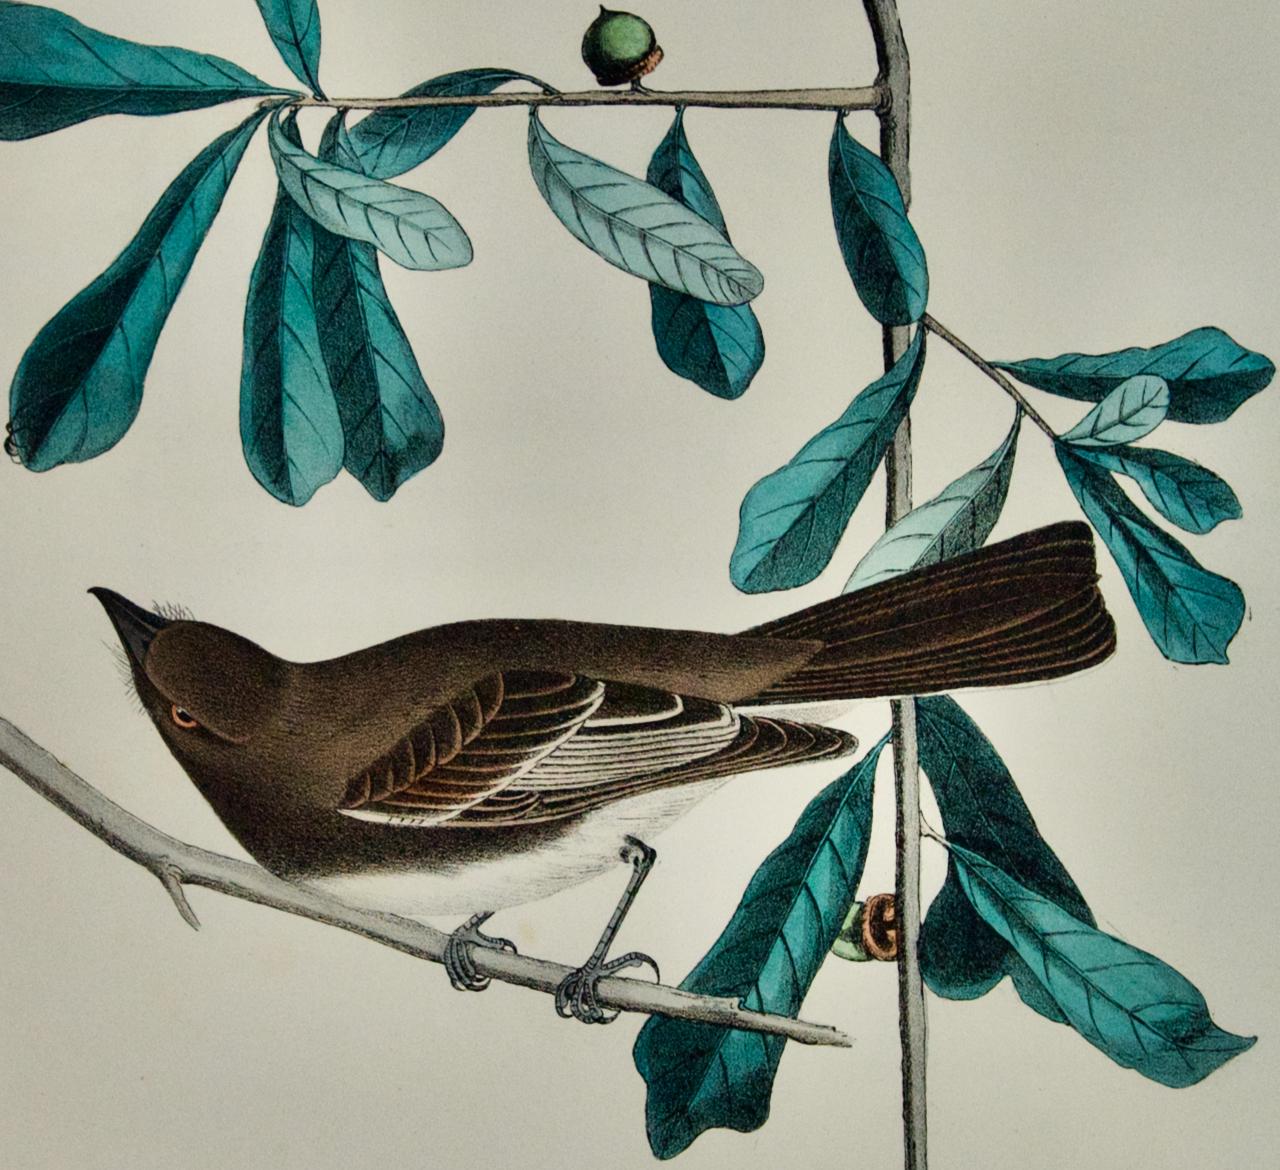 Rocky Mountain Flycatcher: Original handkolorierte Vogellithographie von Audubon aus dem 19. Jahrhundert – Print von John James Audubon